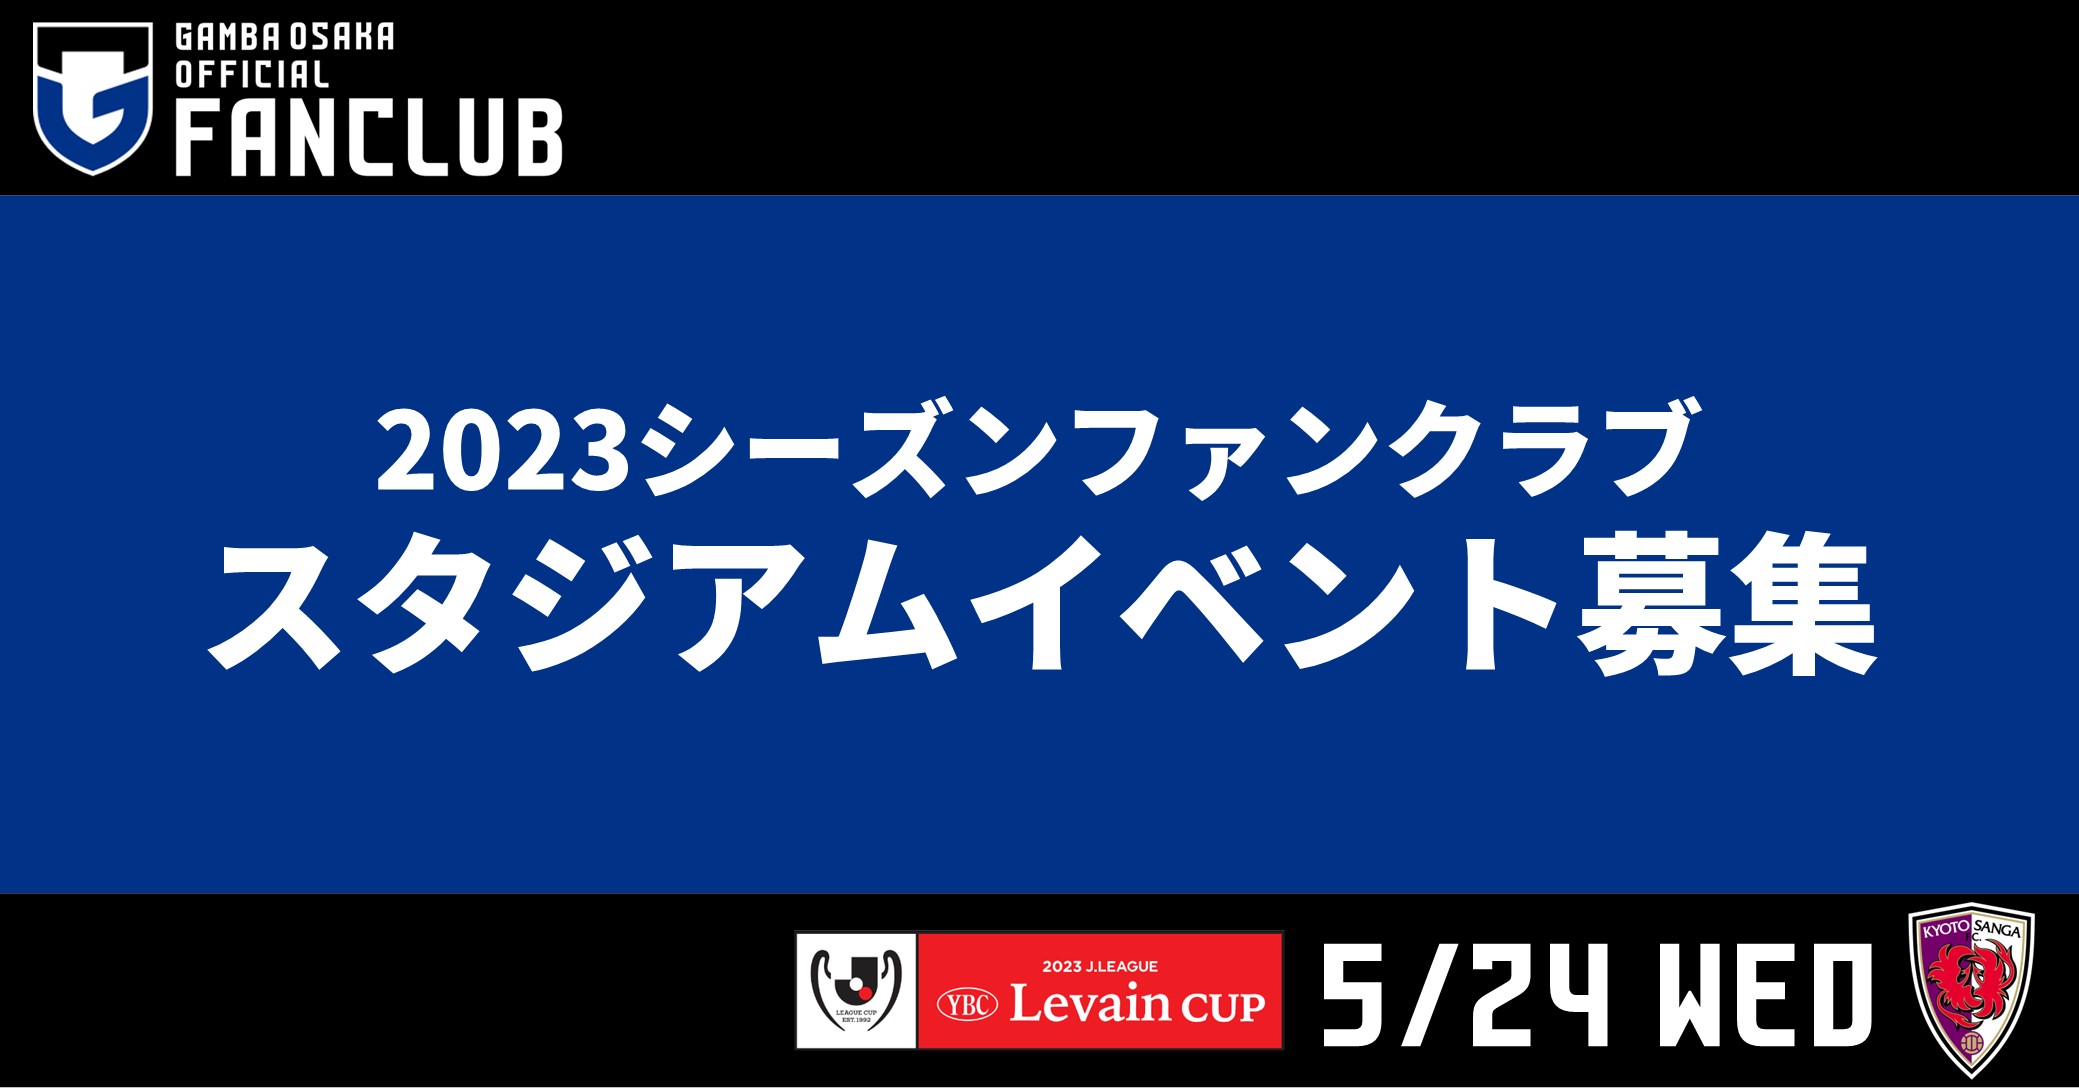 5/24（水）JリーグYBCルヴァンカップ グループステージ 第5節 京都戦 ファンクラブ会員限定イベント参加者募集について